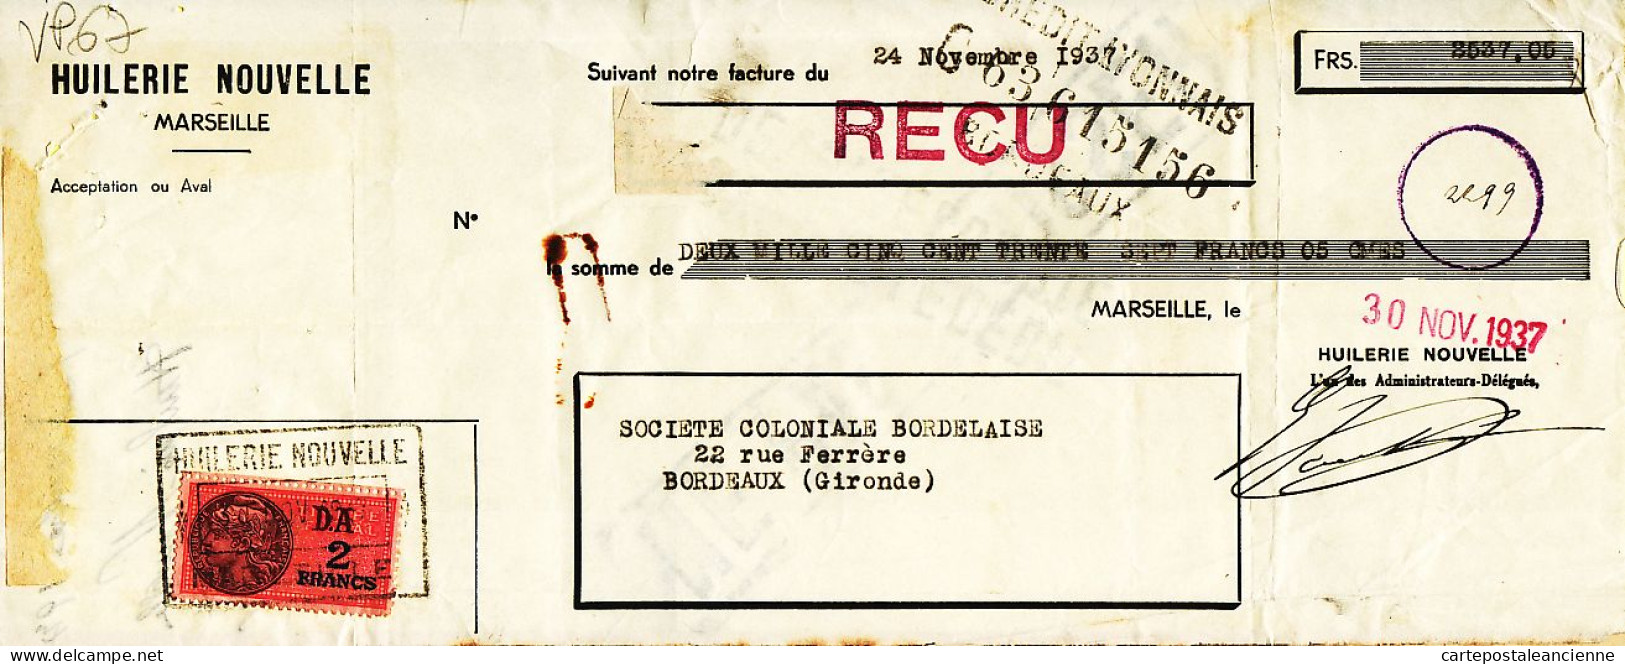 31276 / MARSEILLE Huilerie Nouvelle Lettre De Change 24.11.1937 à BESSE Coloniale Bordelaise Gironde Timbre Fiscal - Wechsel